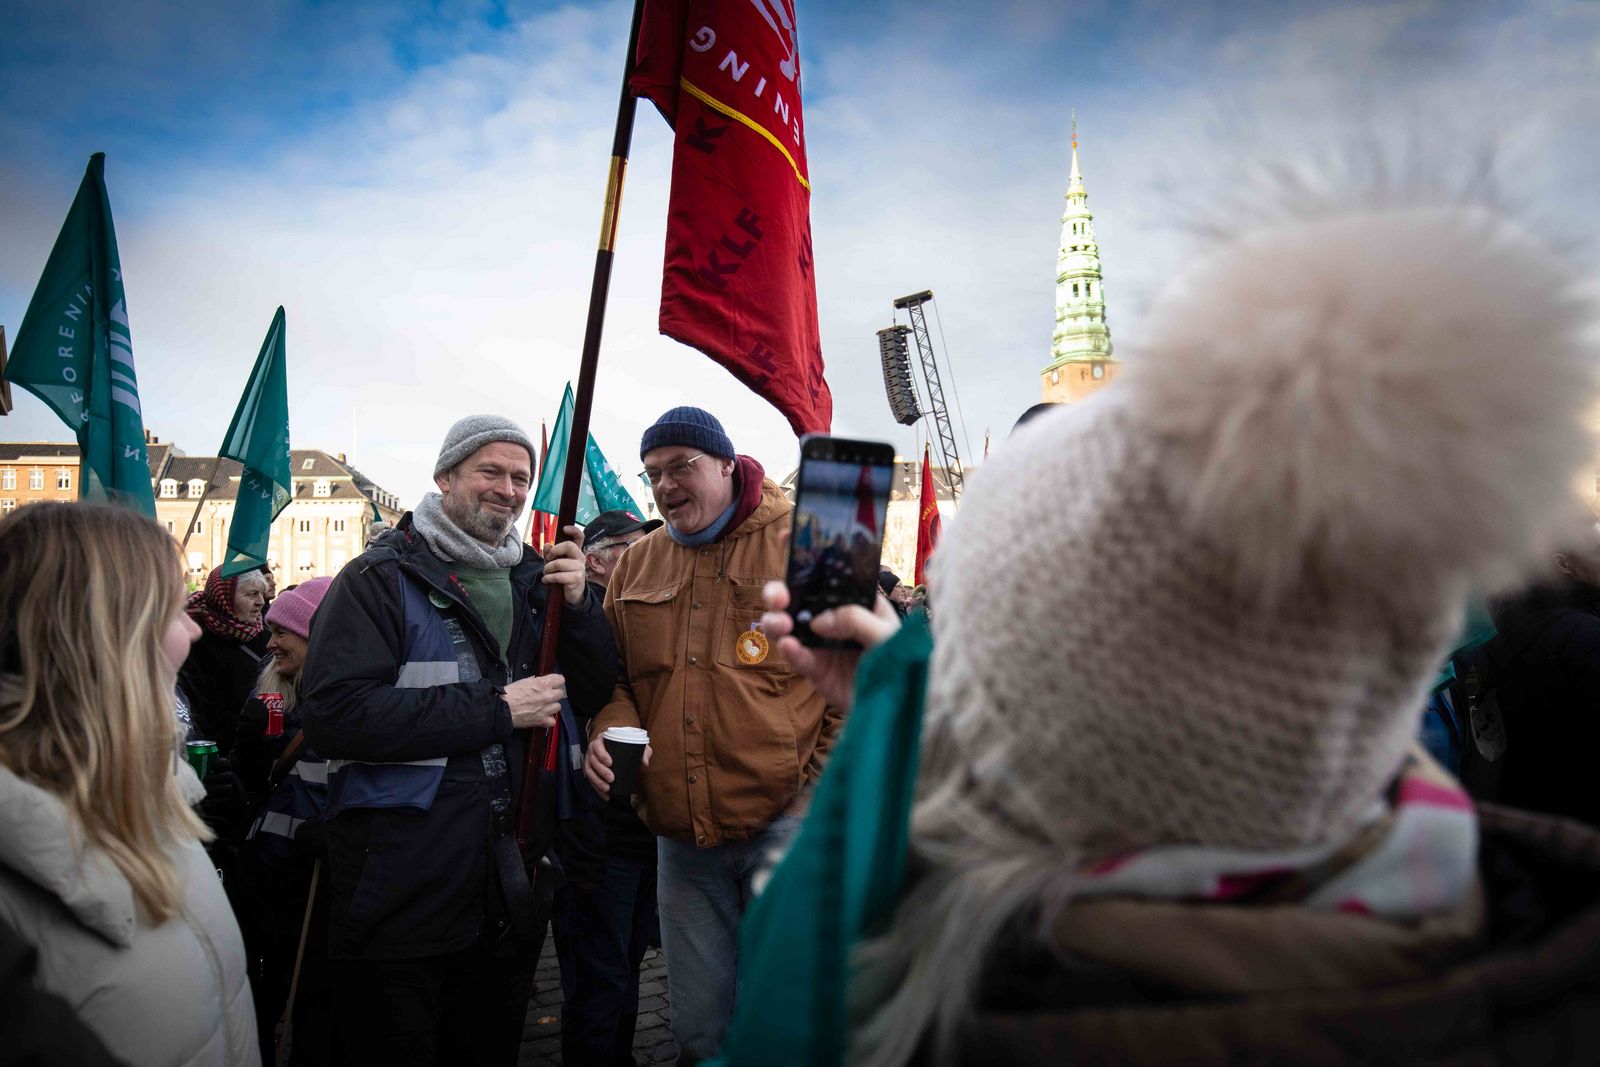 KLF's røde fane blev luftet sammen med de fremmødte medlemmer til dagens store bededags-demonstration. Foto: Jan Klint Poulsen